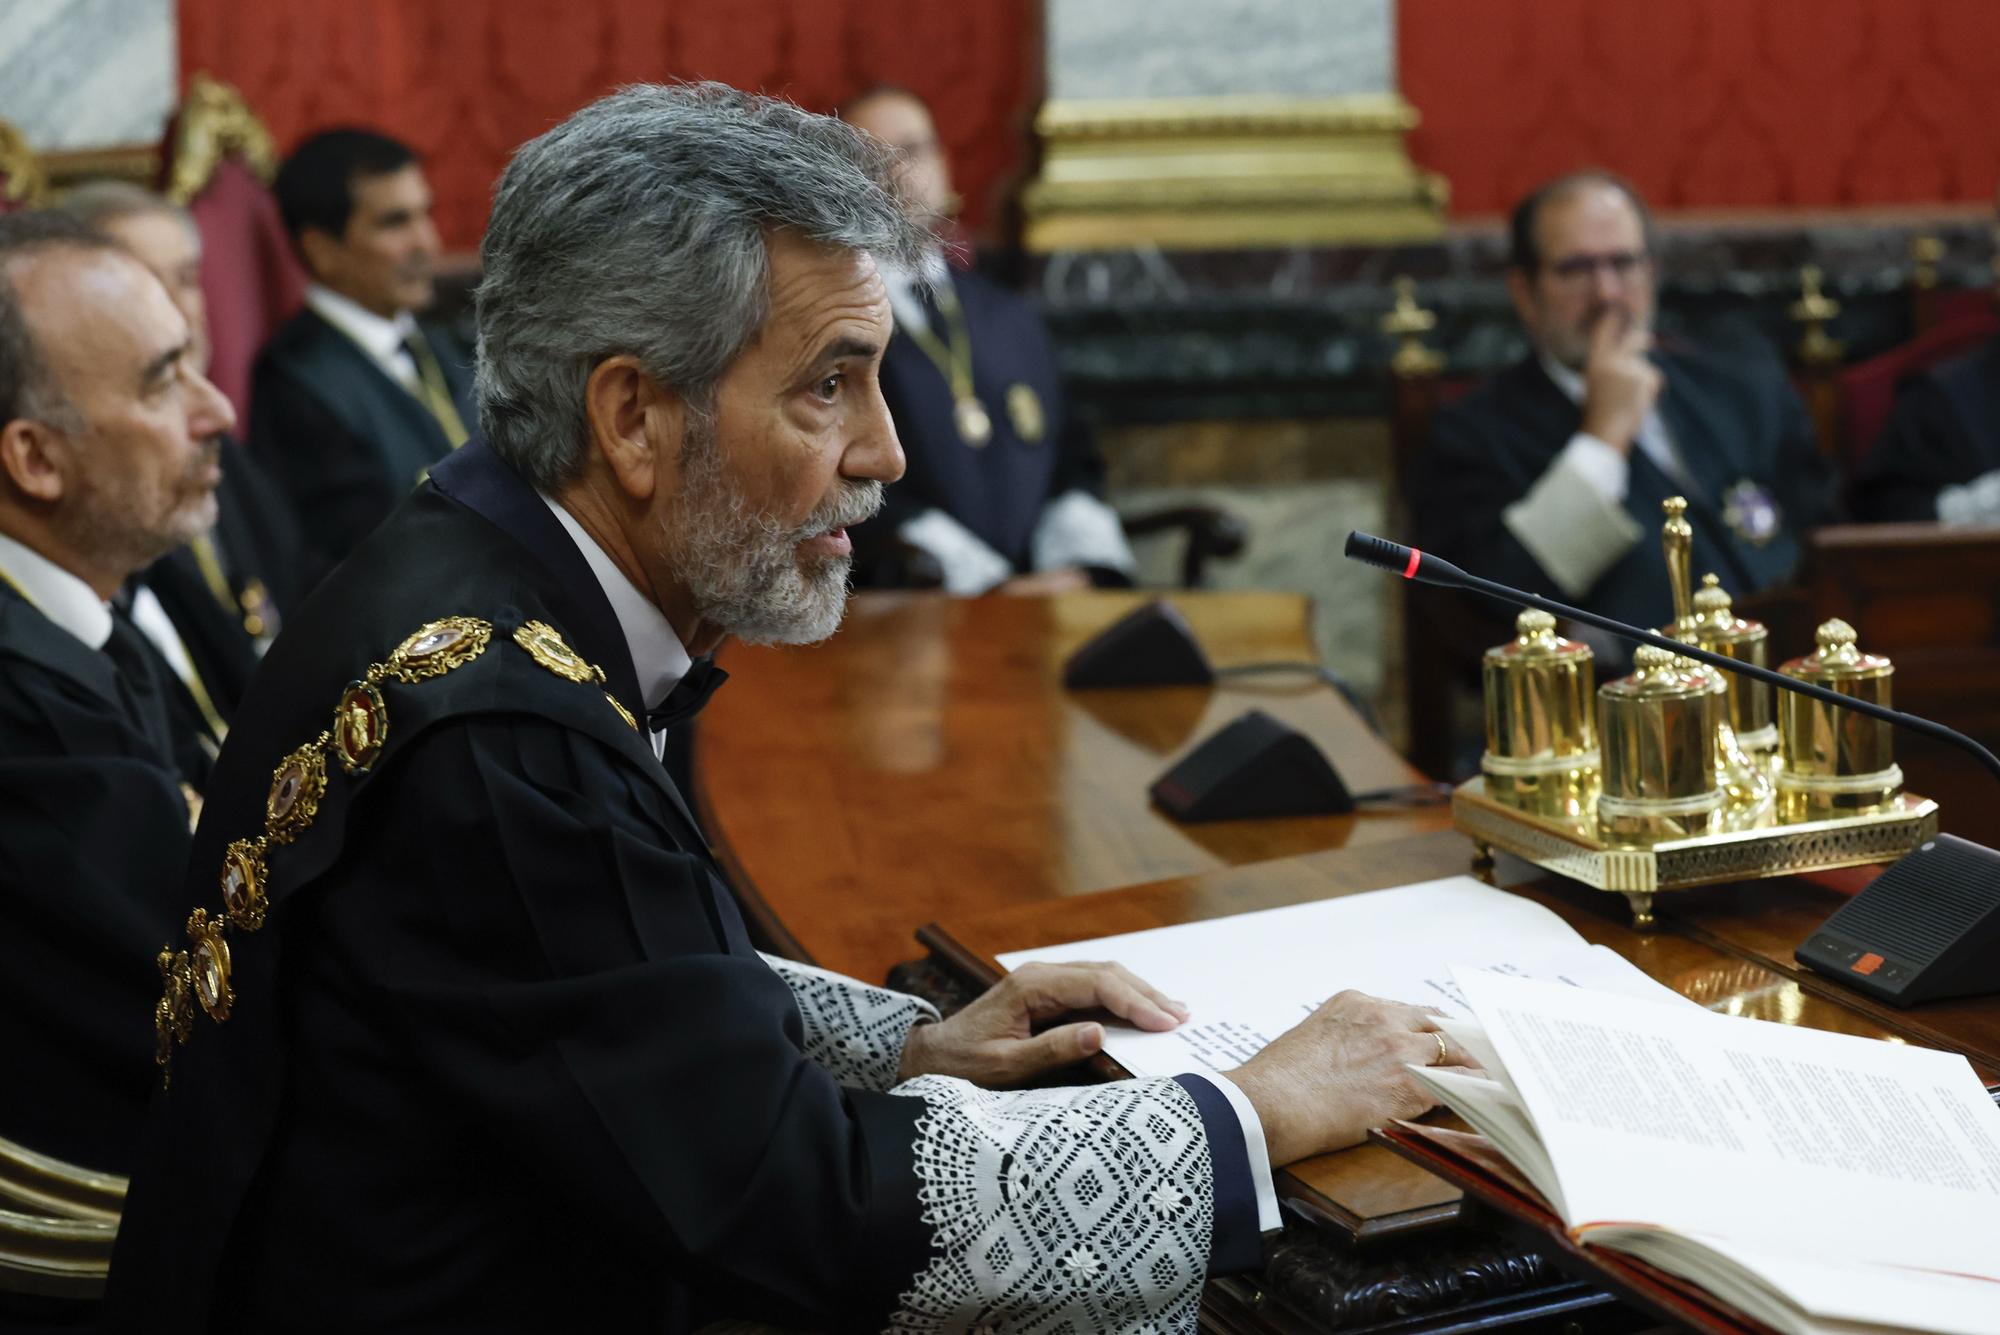 El presidente del CGPJ, Carlos Lesmes, durante la toma de posesión del nuevo fiscal general del Estado, Álvaro García Ortiz, en el Tribunal Supremo en Madrid, el 5 de septiembre.